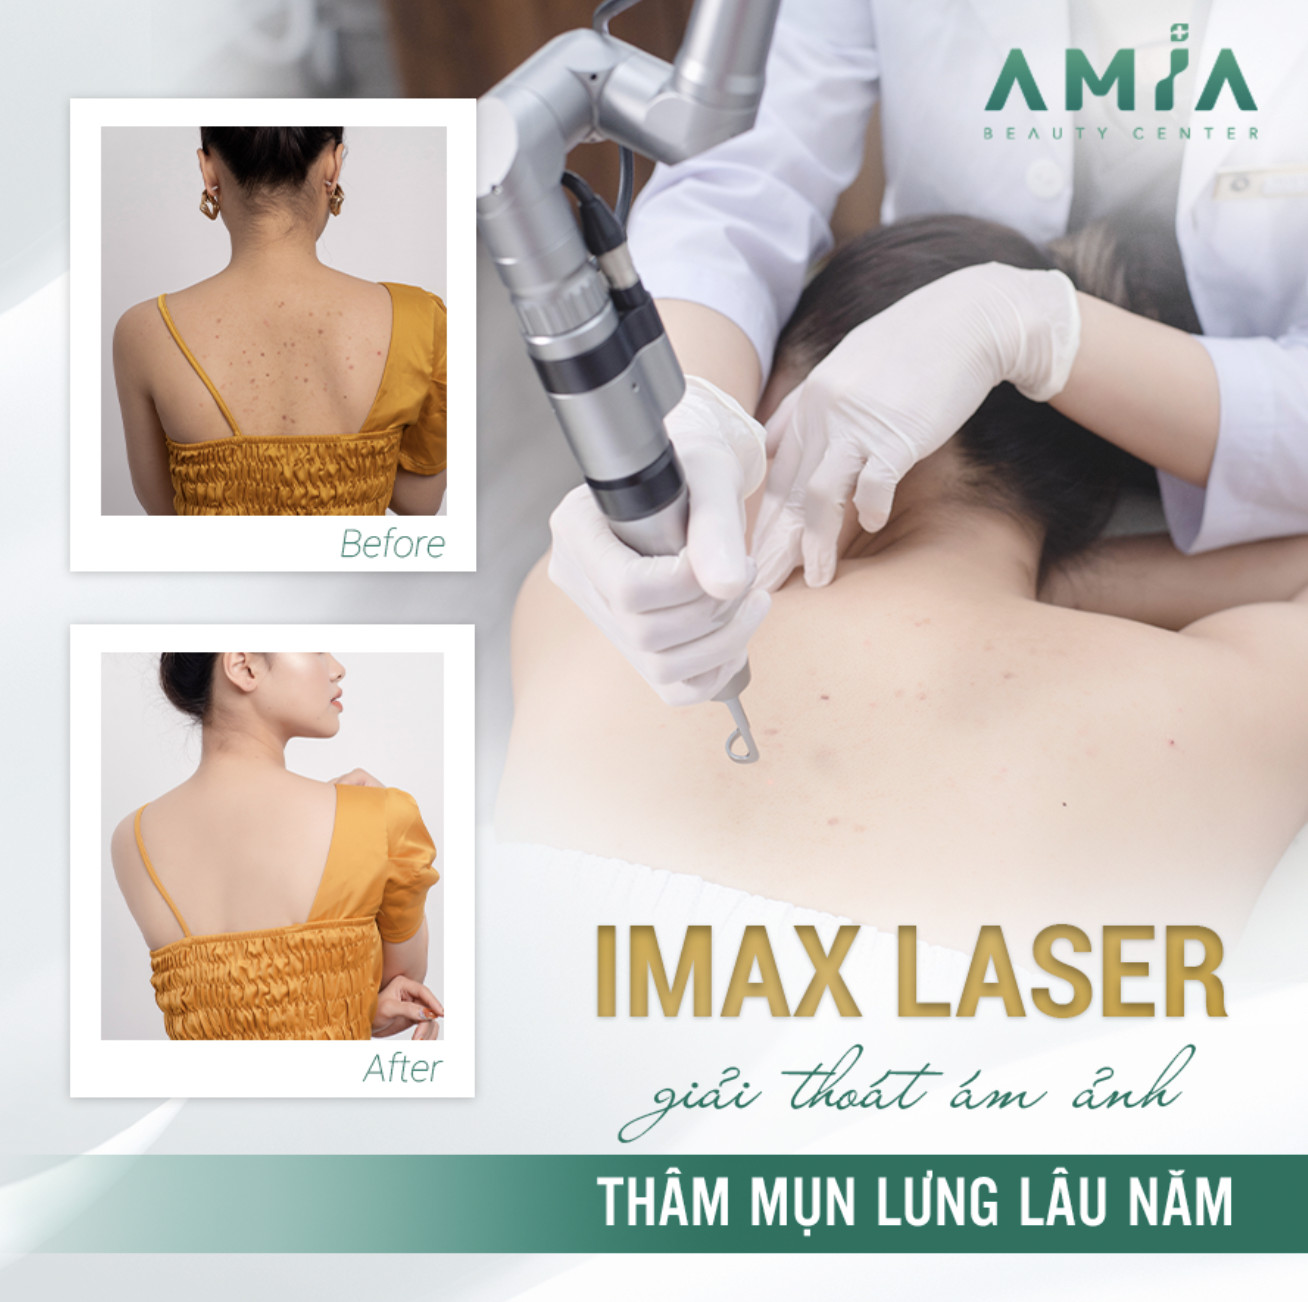 Dịch vụ trị thâm body IMAX Laser giúp xóa bỏ vết thâm sạm nhanh chóng, an toàn